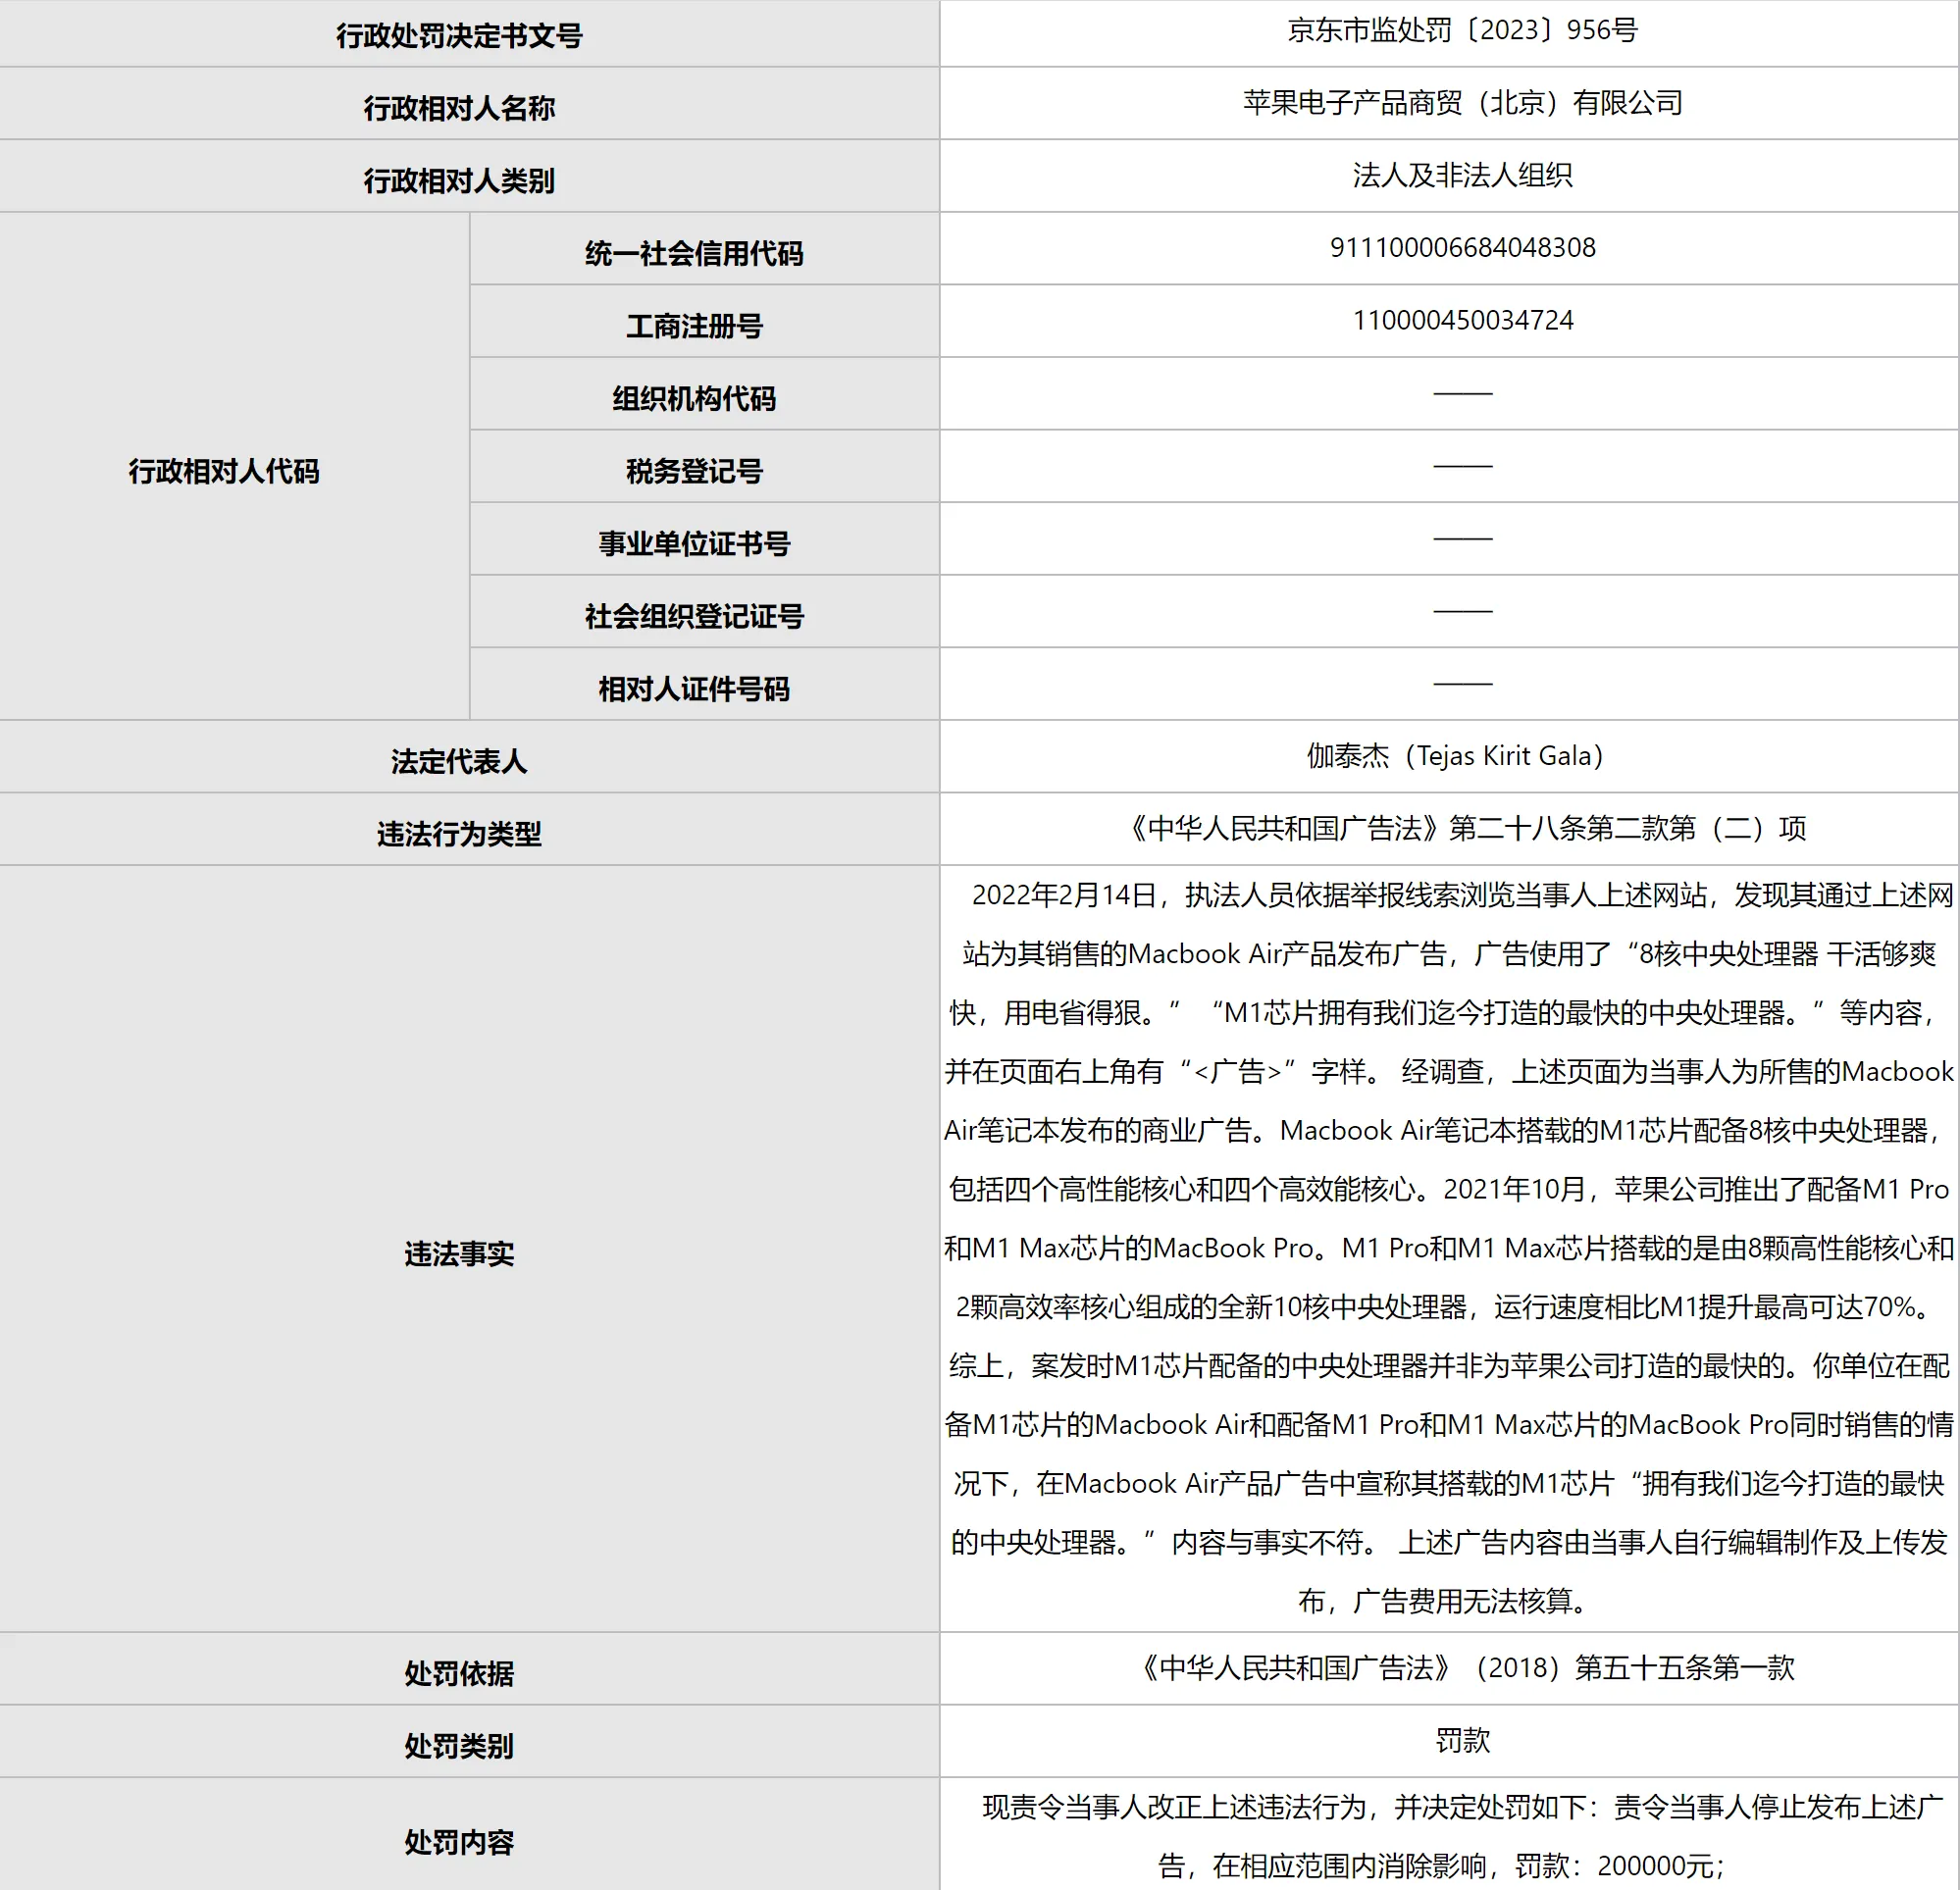 苹果发布虚假广告被北京市场监管部门行政处罚20万